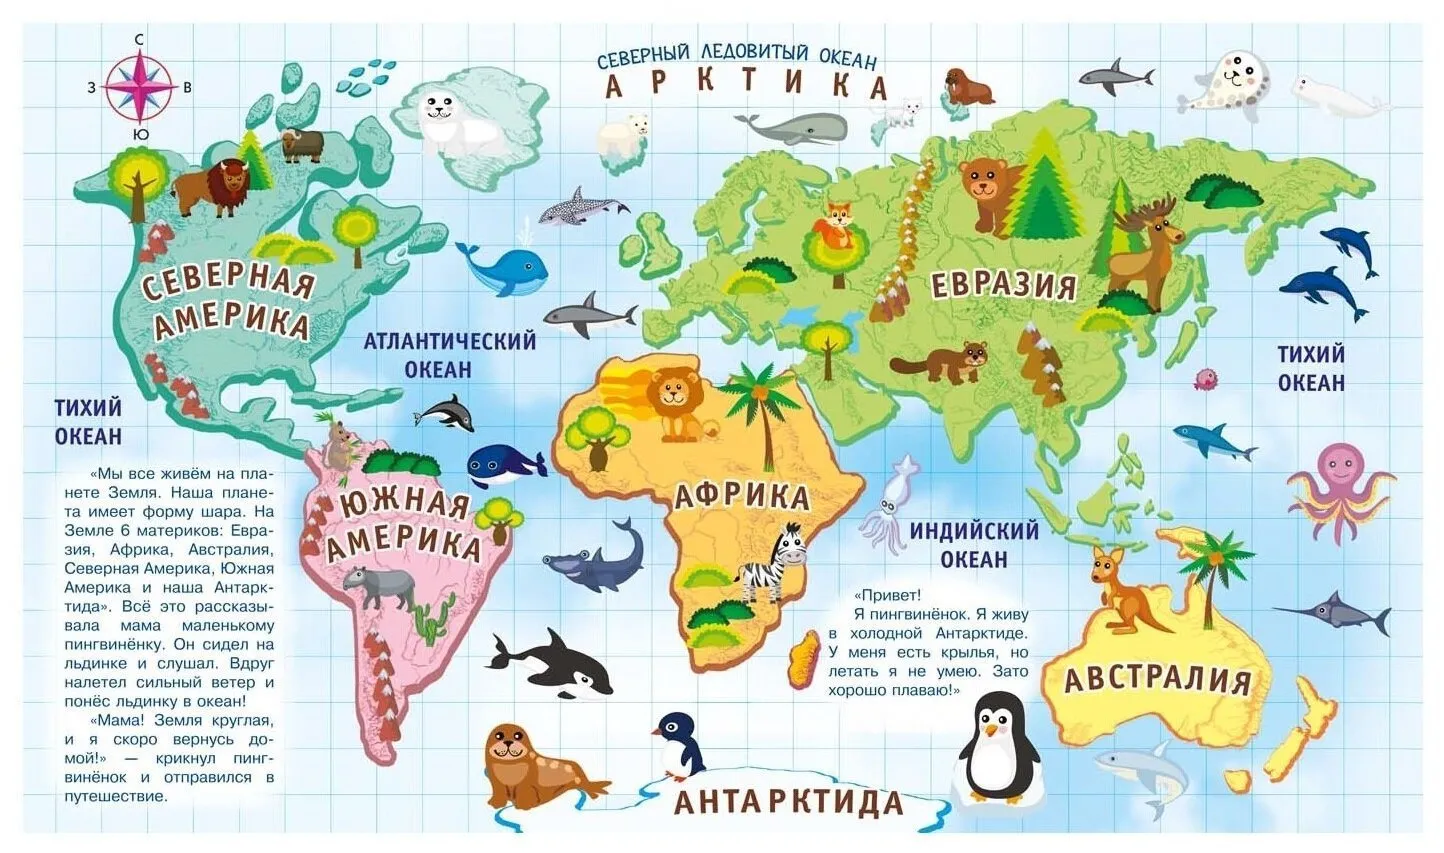 Картинка материков с названиями. Континенты для дошкольников. Страны и континенты для детей. Материки для дошкольников. Материки с животными для детей.